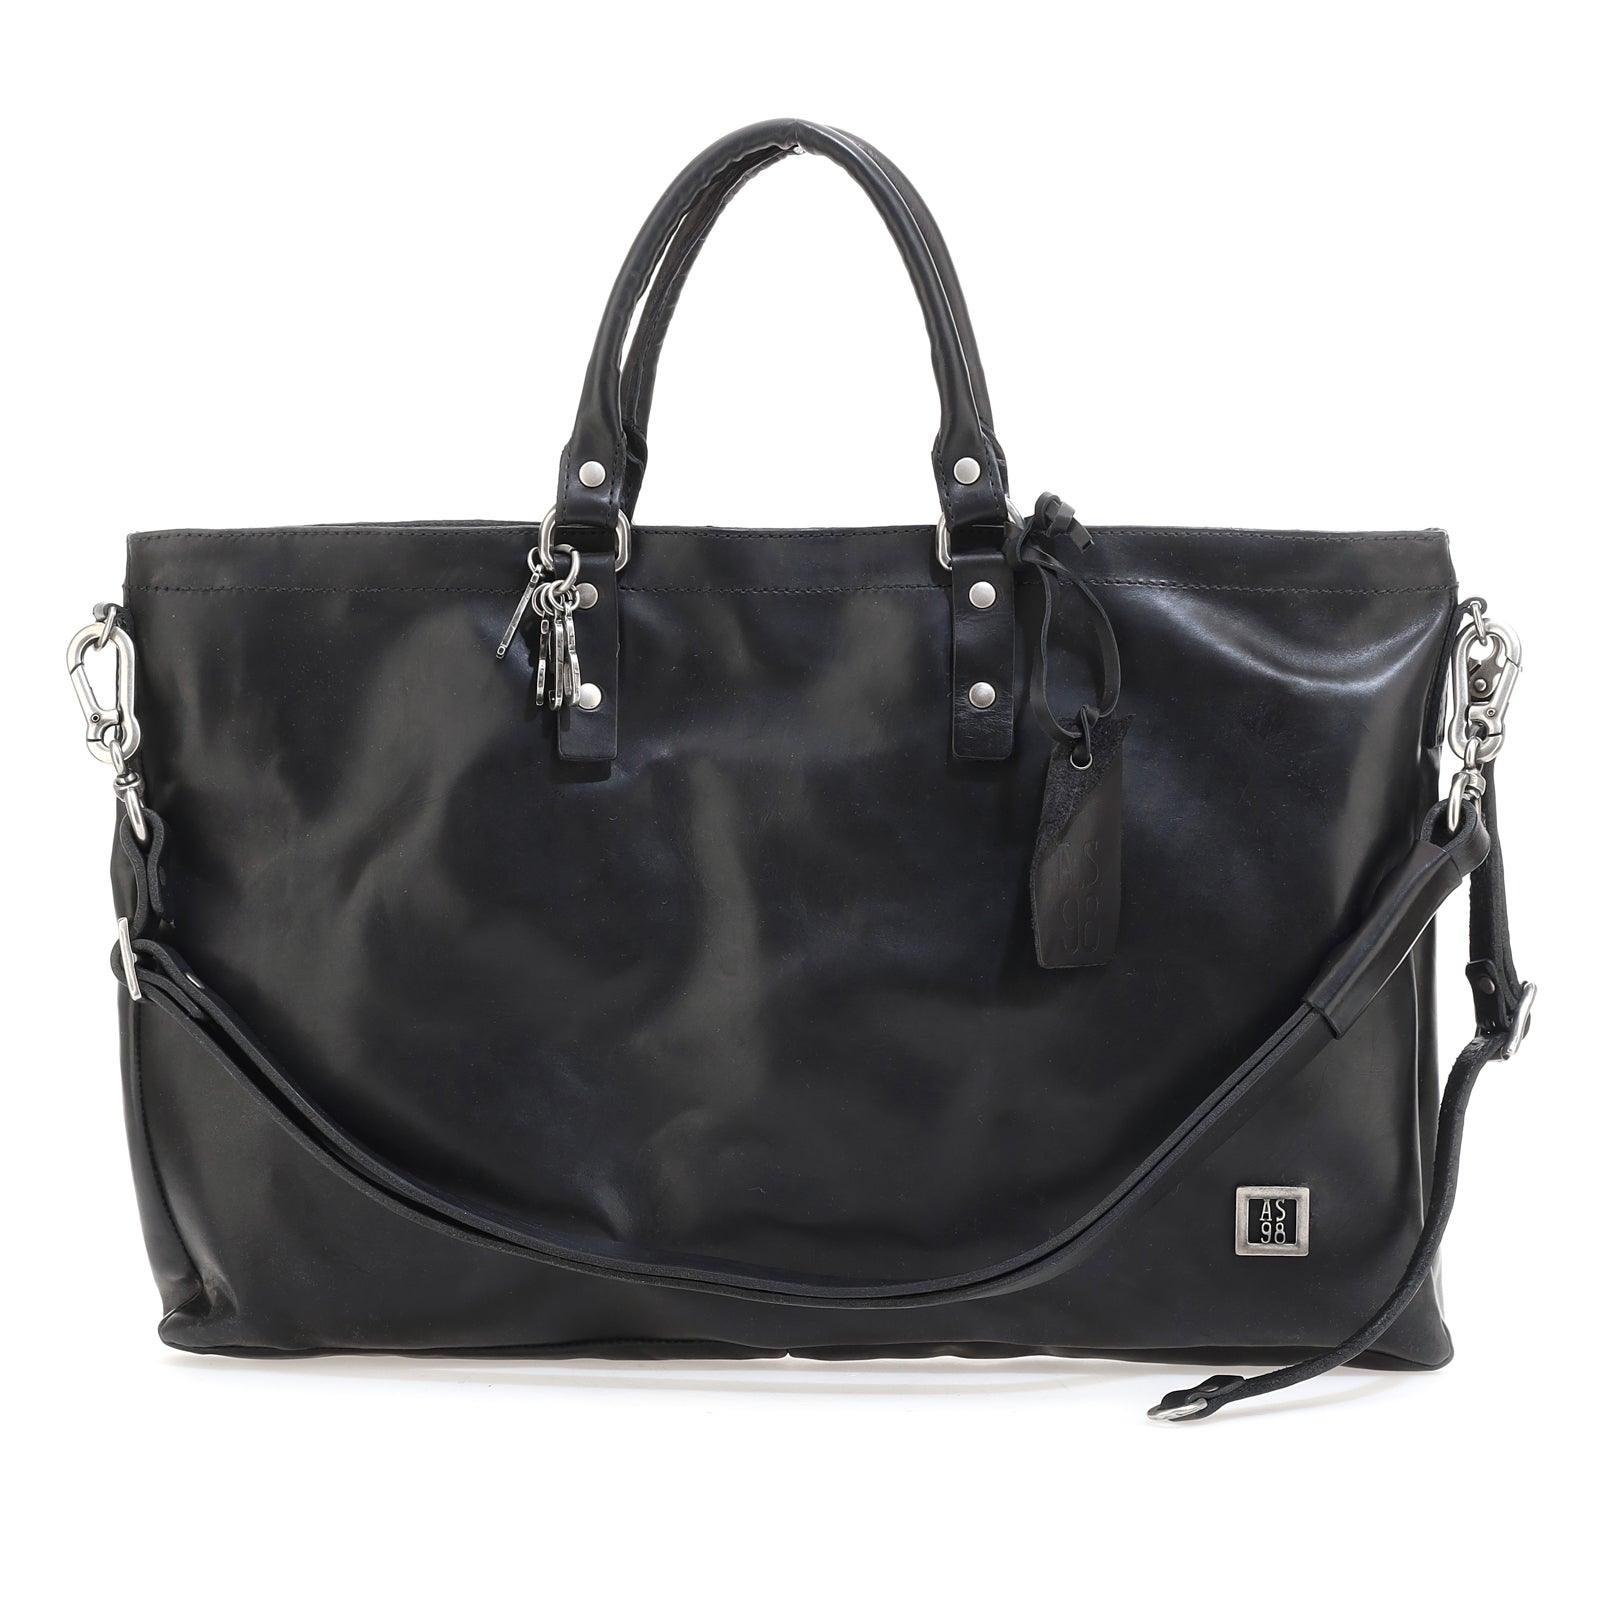 Bonny - A.S. 98 - Handbags